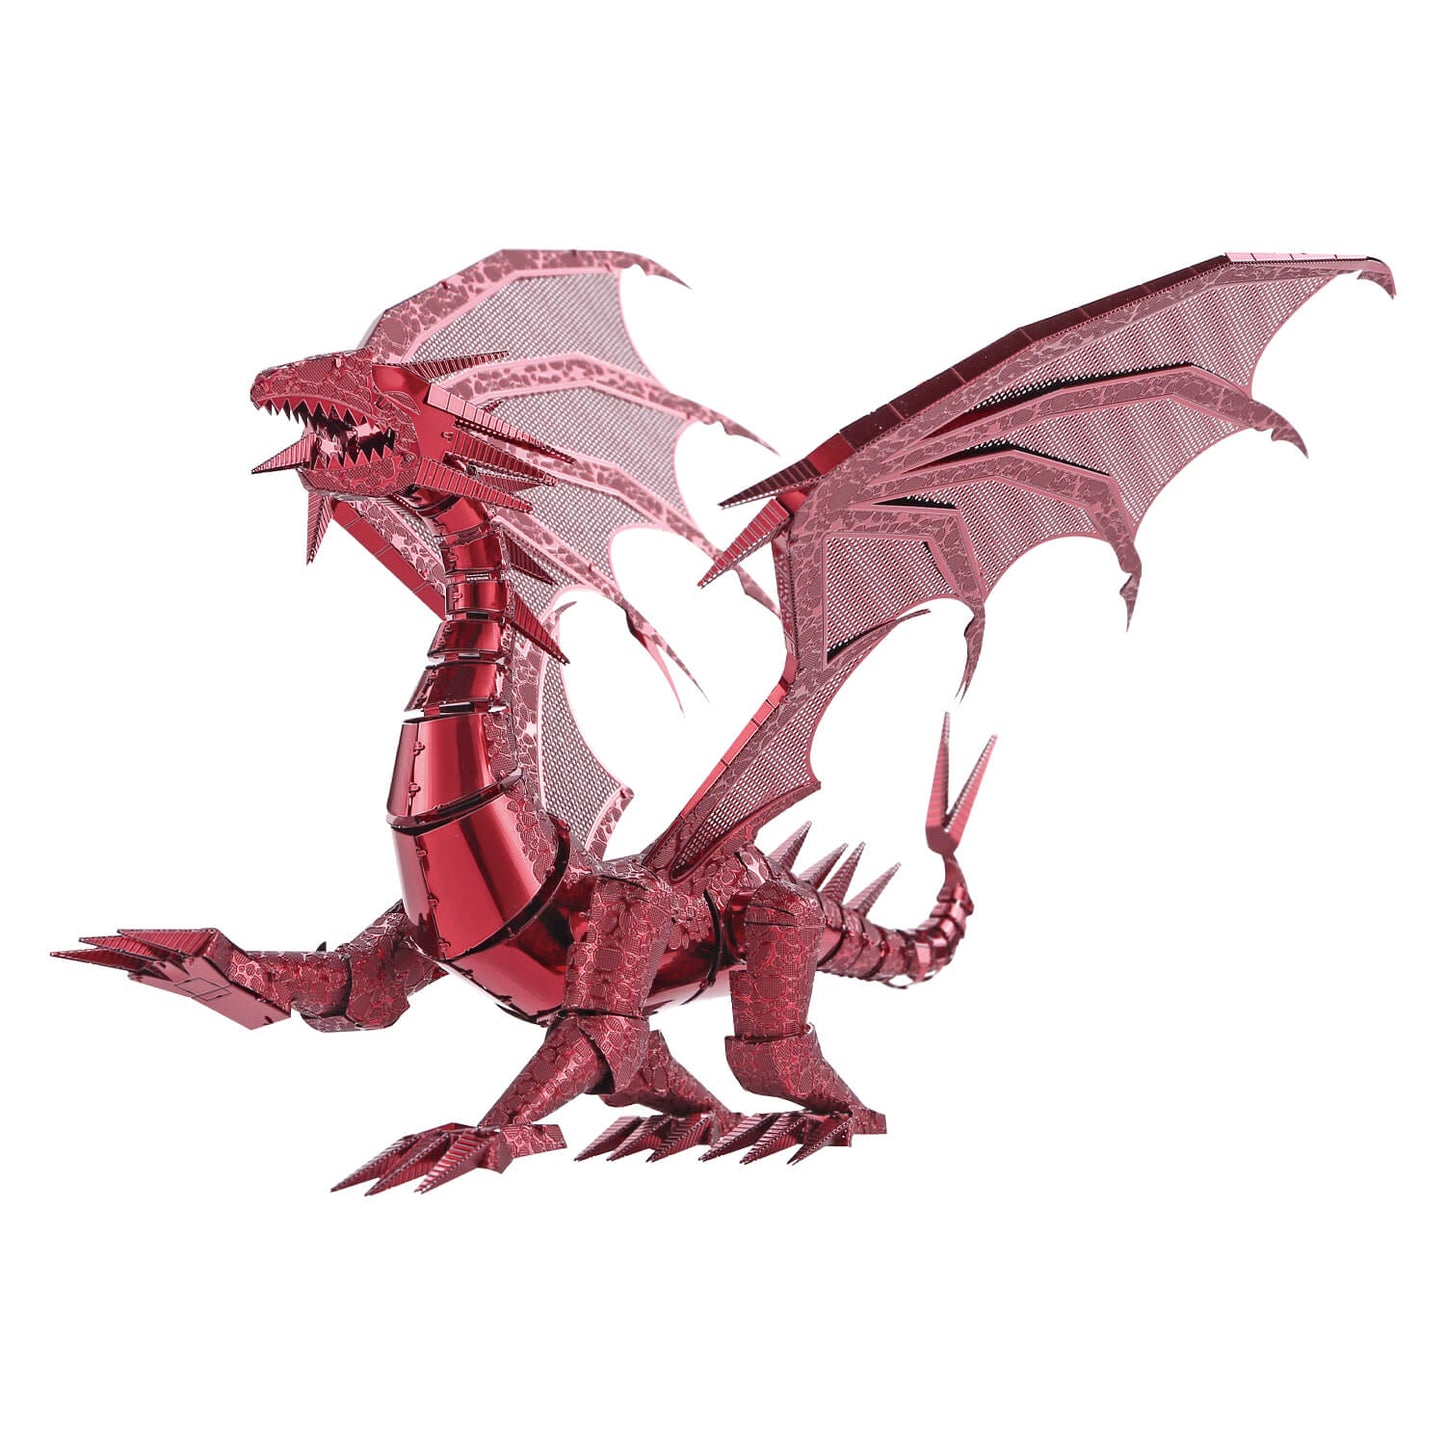 dragón rojo